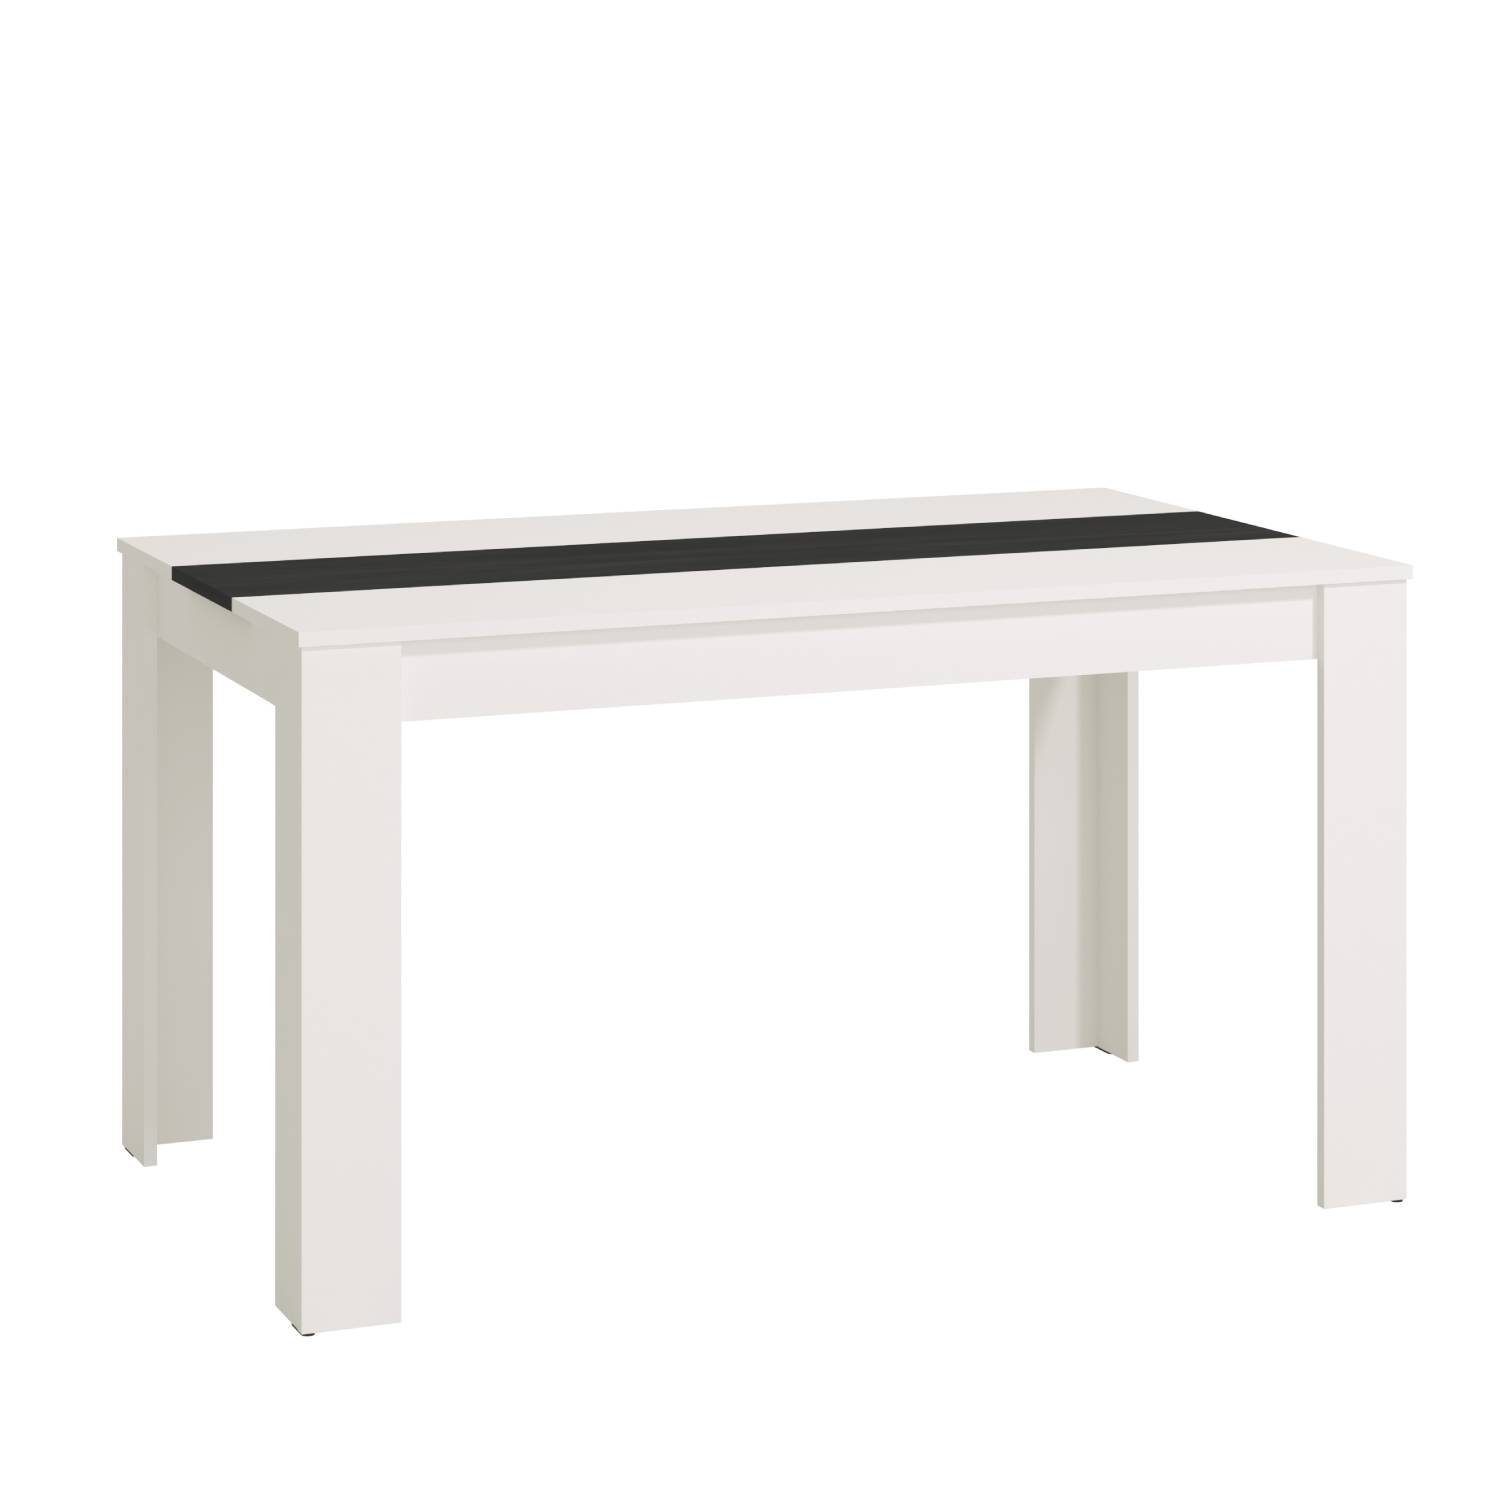 Homestyle4u Esstisch Esszimmertisch Holztisch Küchentisch mehrere Farben 135x80 cm Holz (kein Set) weiß | weiß | weiß